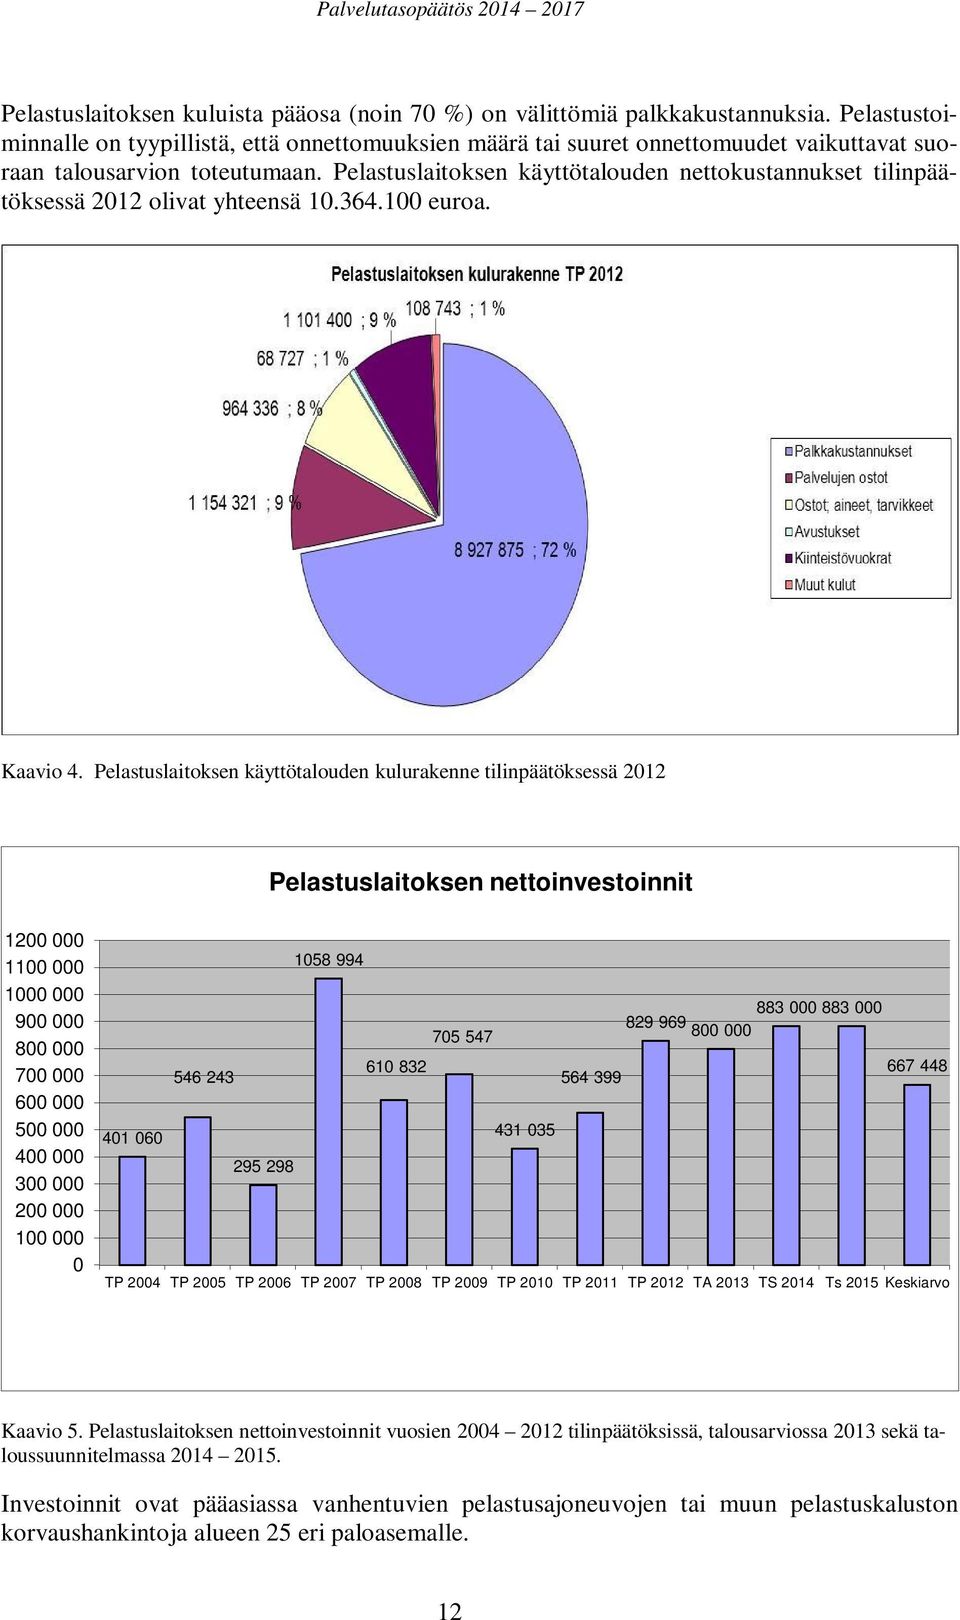 Pelastuslaitoksen käyttötalouden nettokustannukset tilinpäätöksessä 2012 olivat yhteensä 10.364.100 euroa. Kaavio 4.